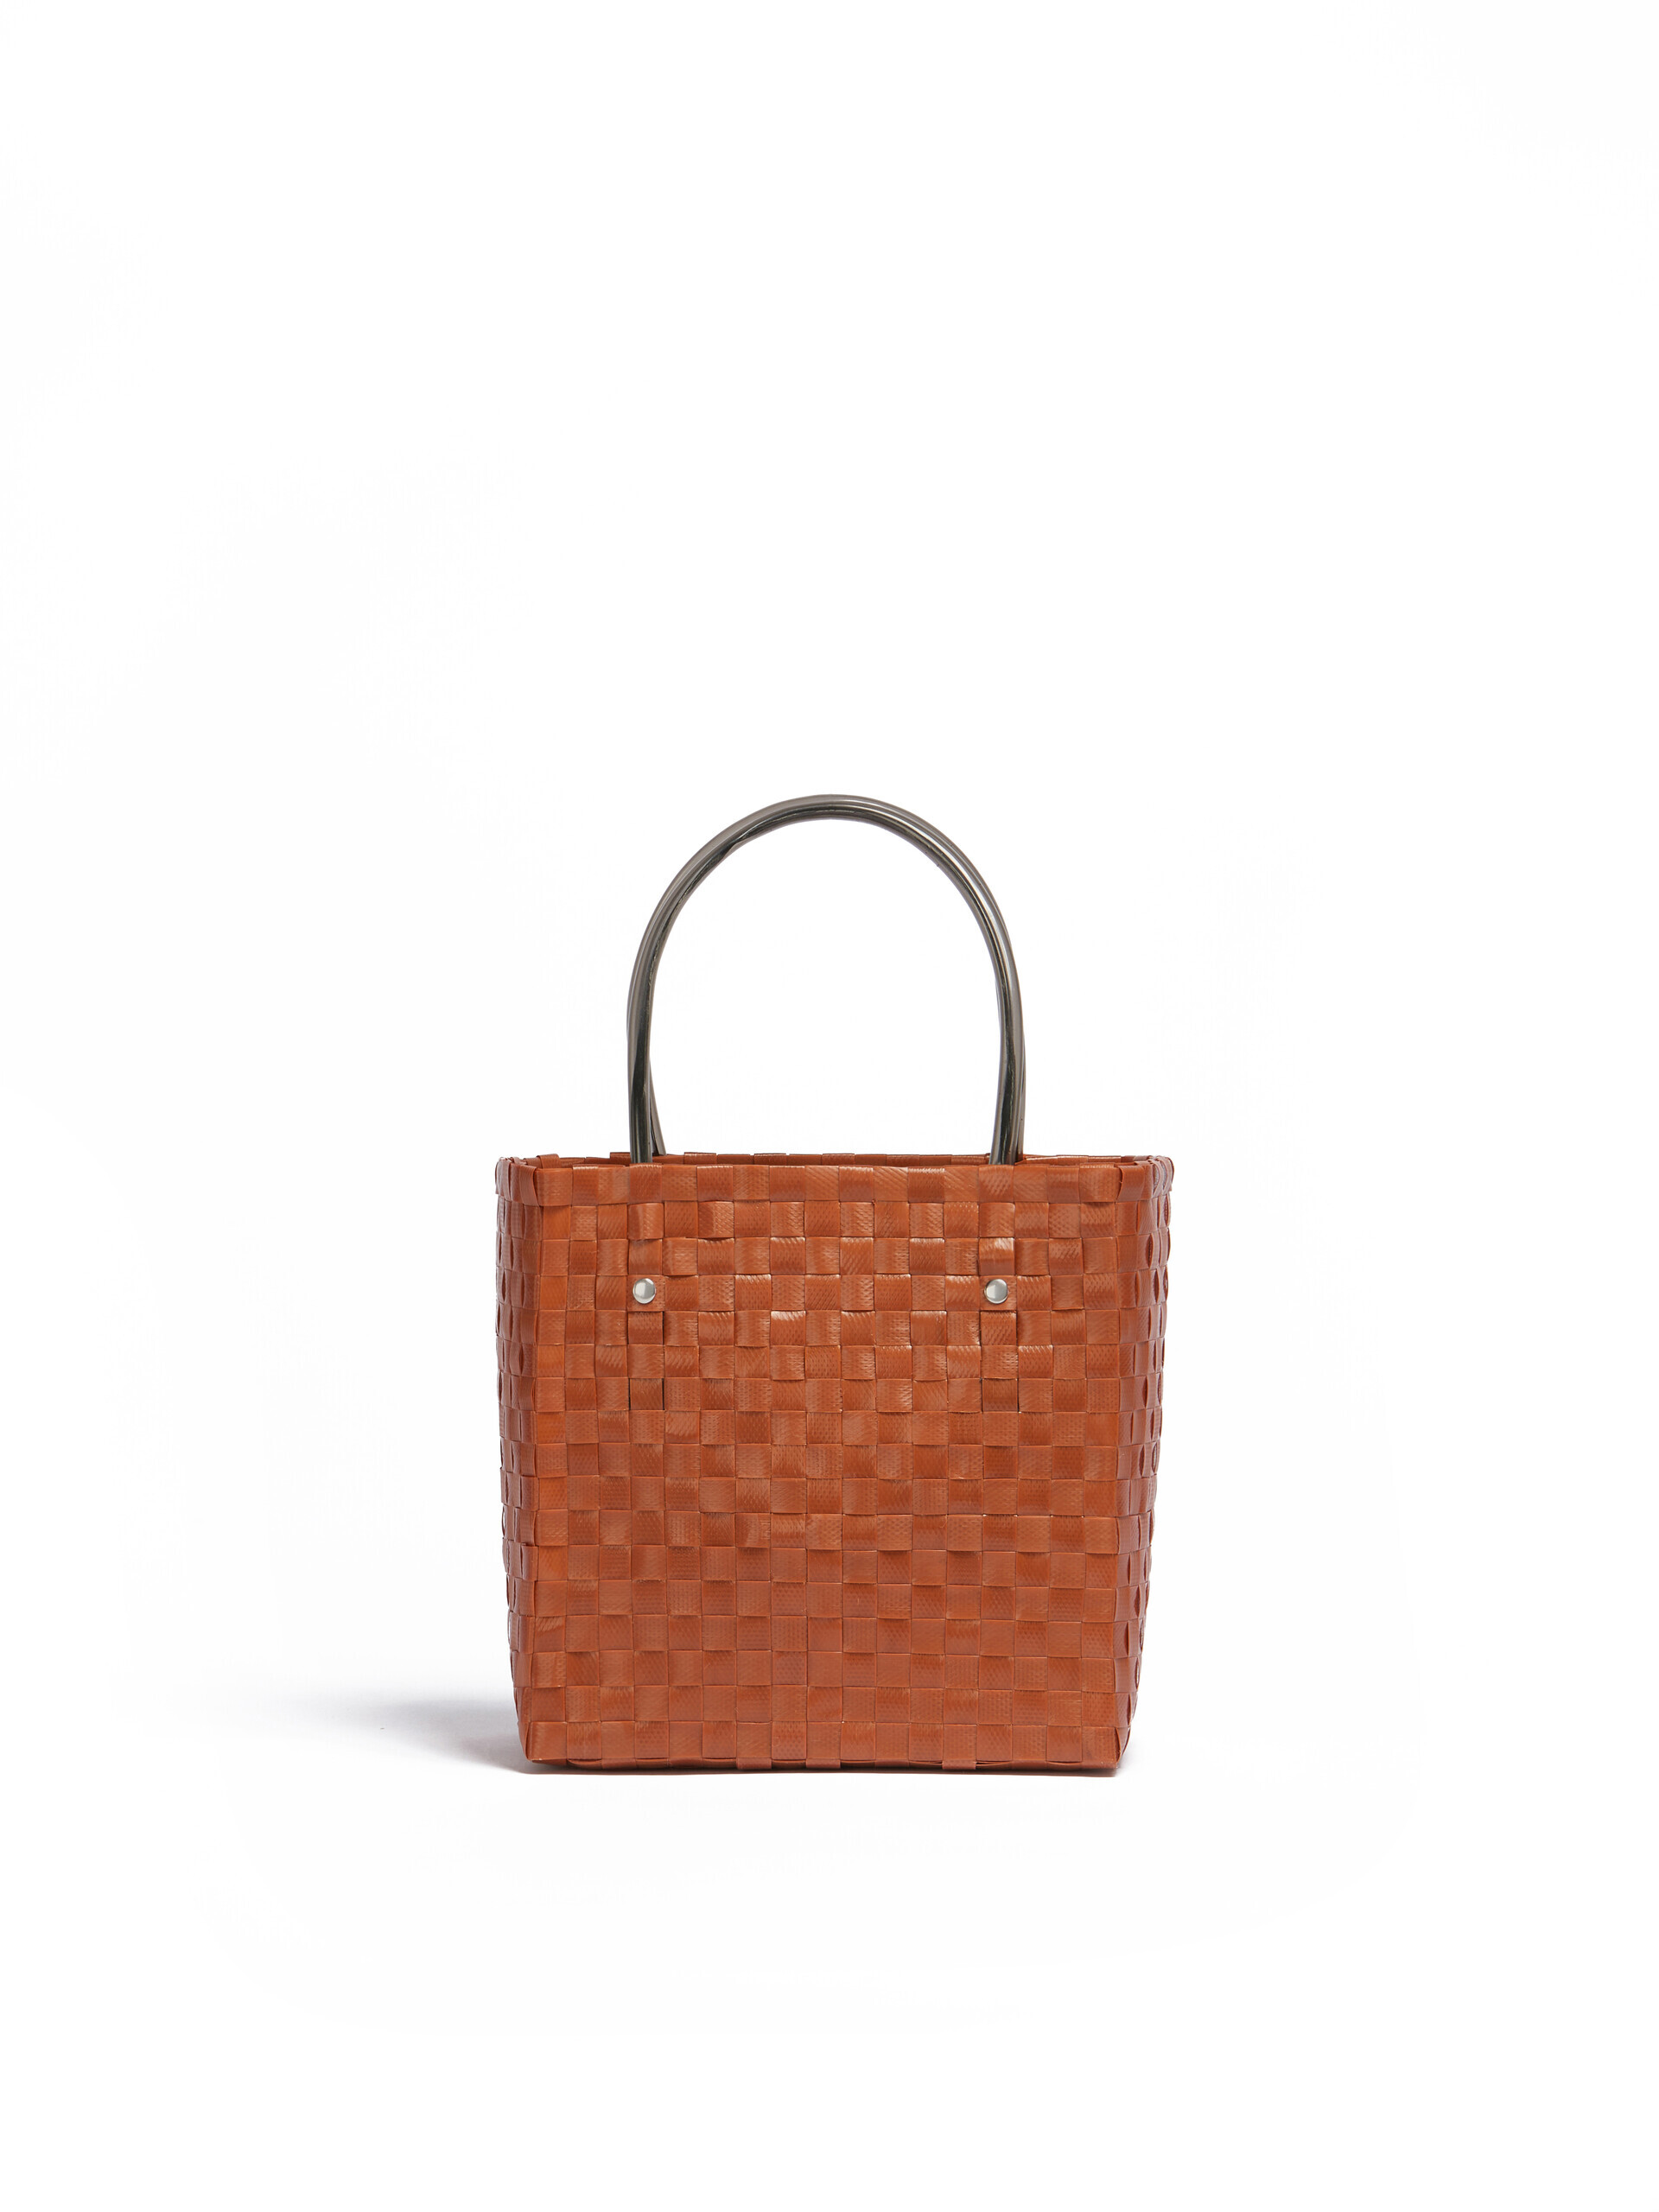 Light pink MARNI MARKET ANIMAL BASKET bag - Shopping Bags - Image 3